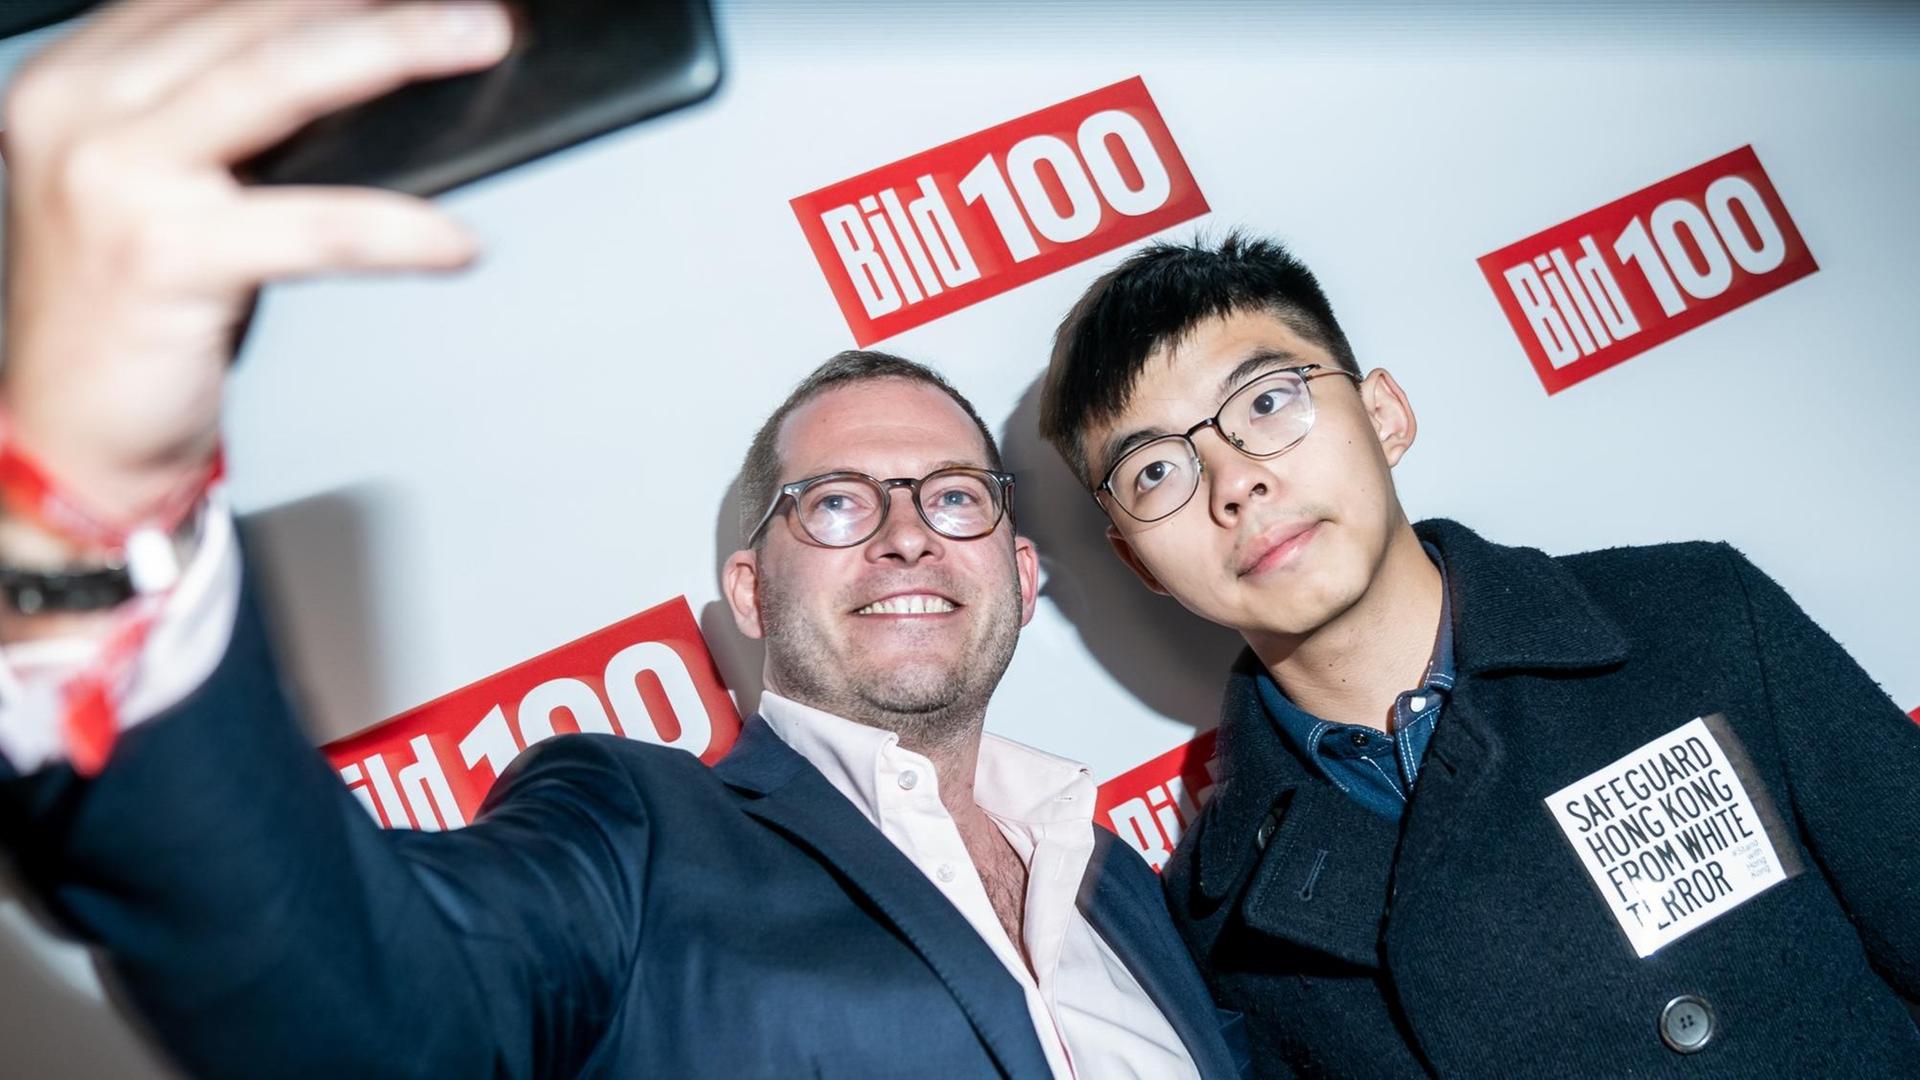 "Bild"-Chefredakteur Julian Reichelt macht ein Selfie mit Joshua Wong, Demokratie-Aktivist der Proteste in Hongkong, bei dessen Eintreffen zur Bild100-Party mit Persönlichkeiten aus Politik, Gesellschaft und Sport.